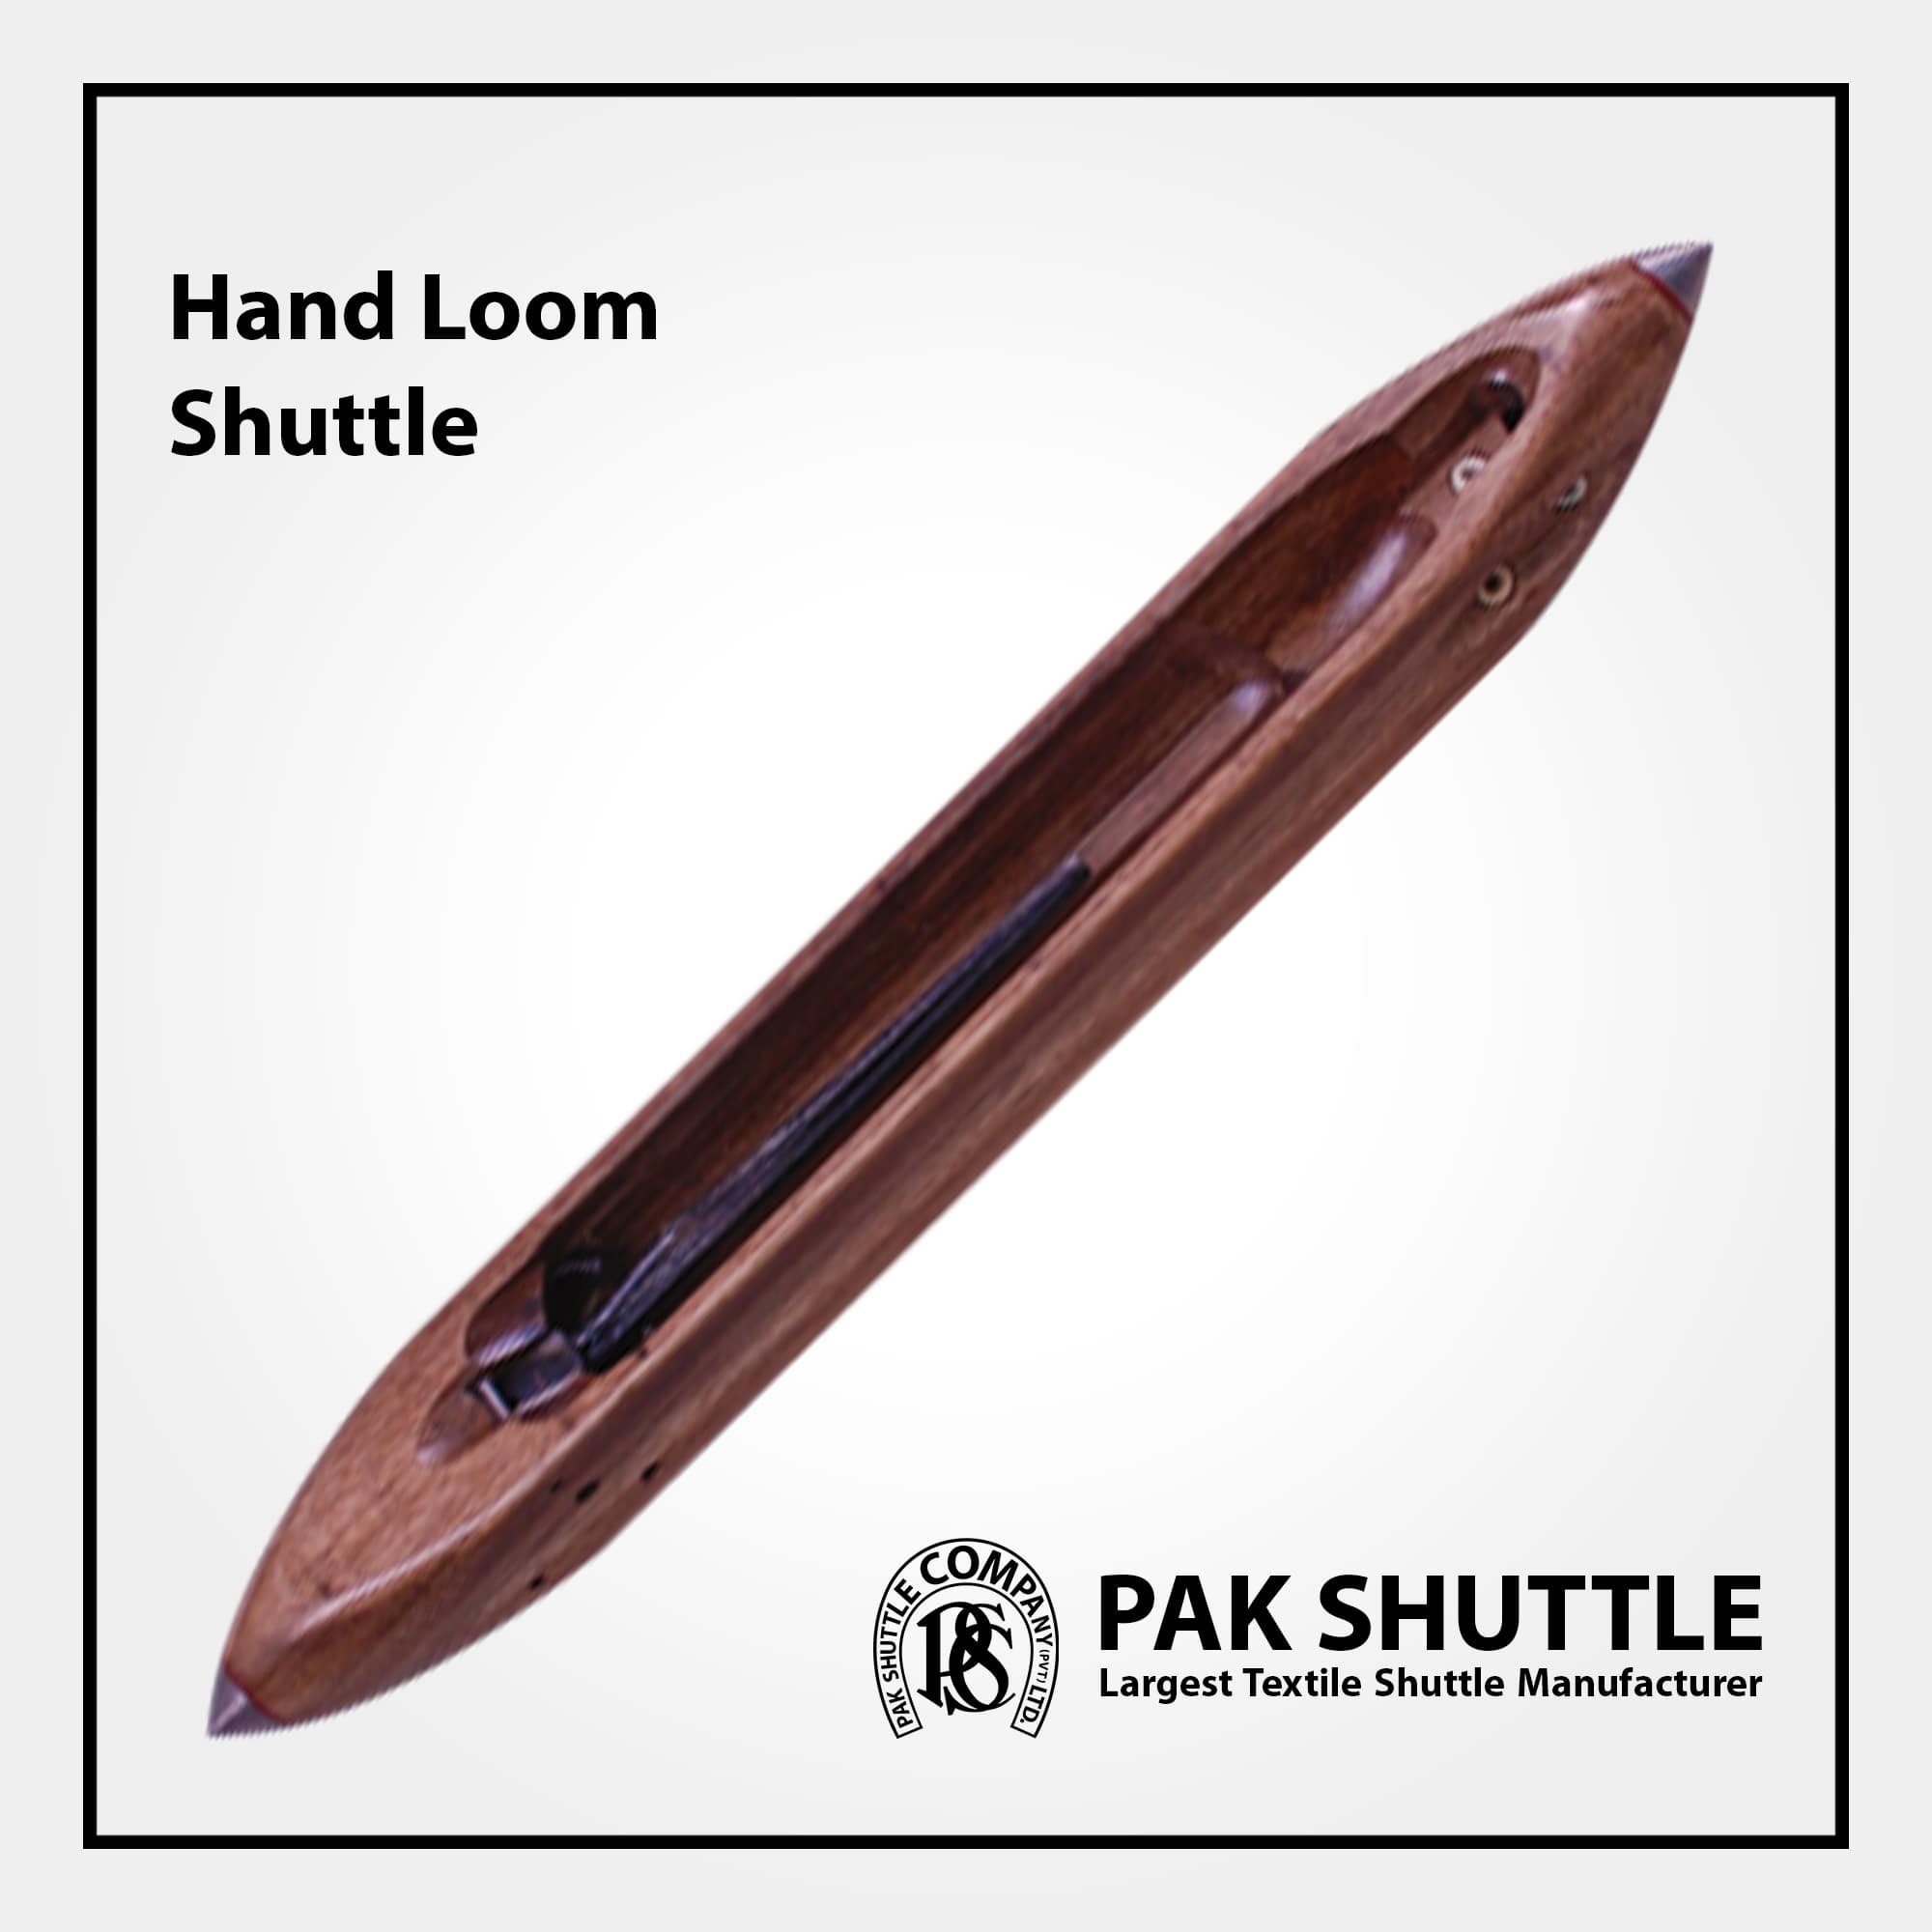 Hand Loom Shuttle by Pak Shuttle Company Pvt Ltd.